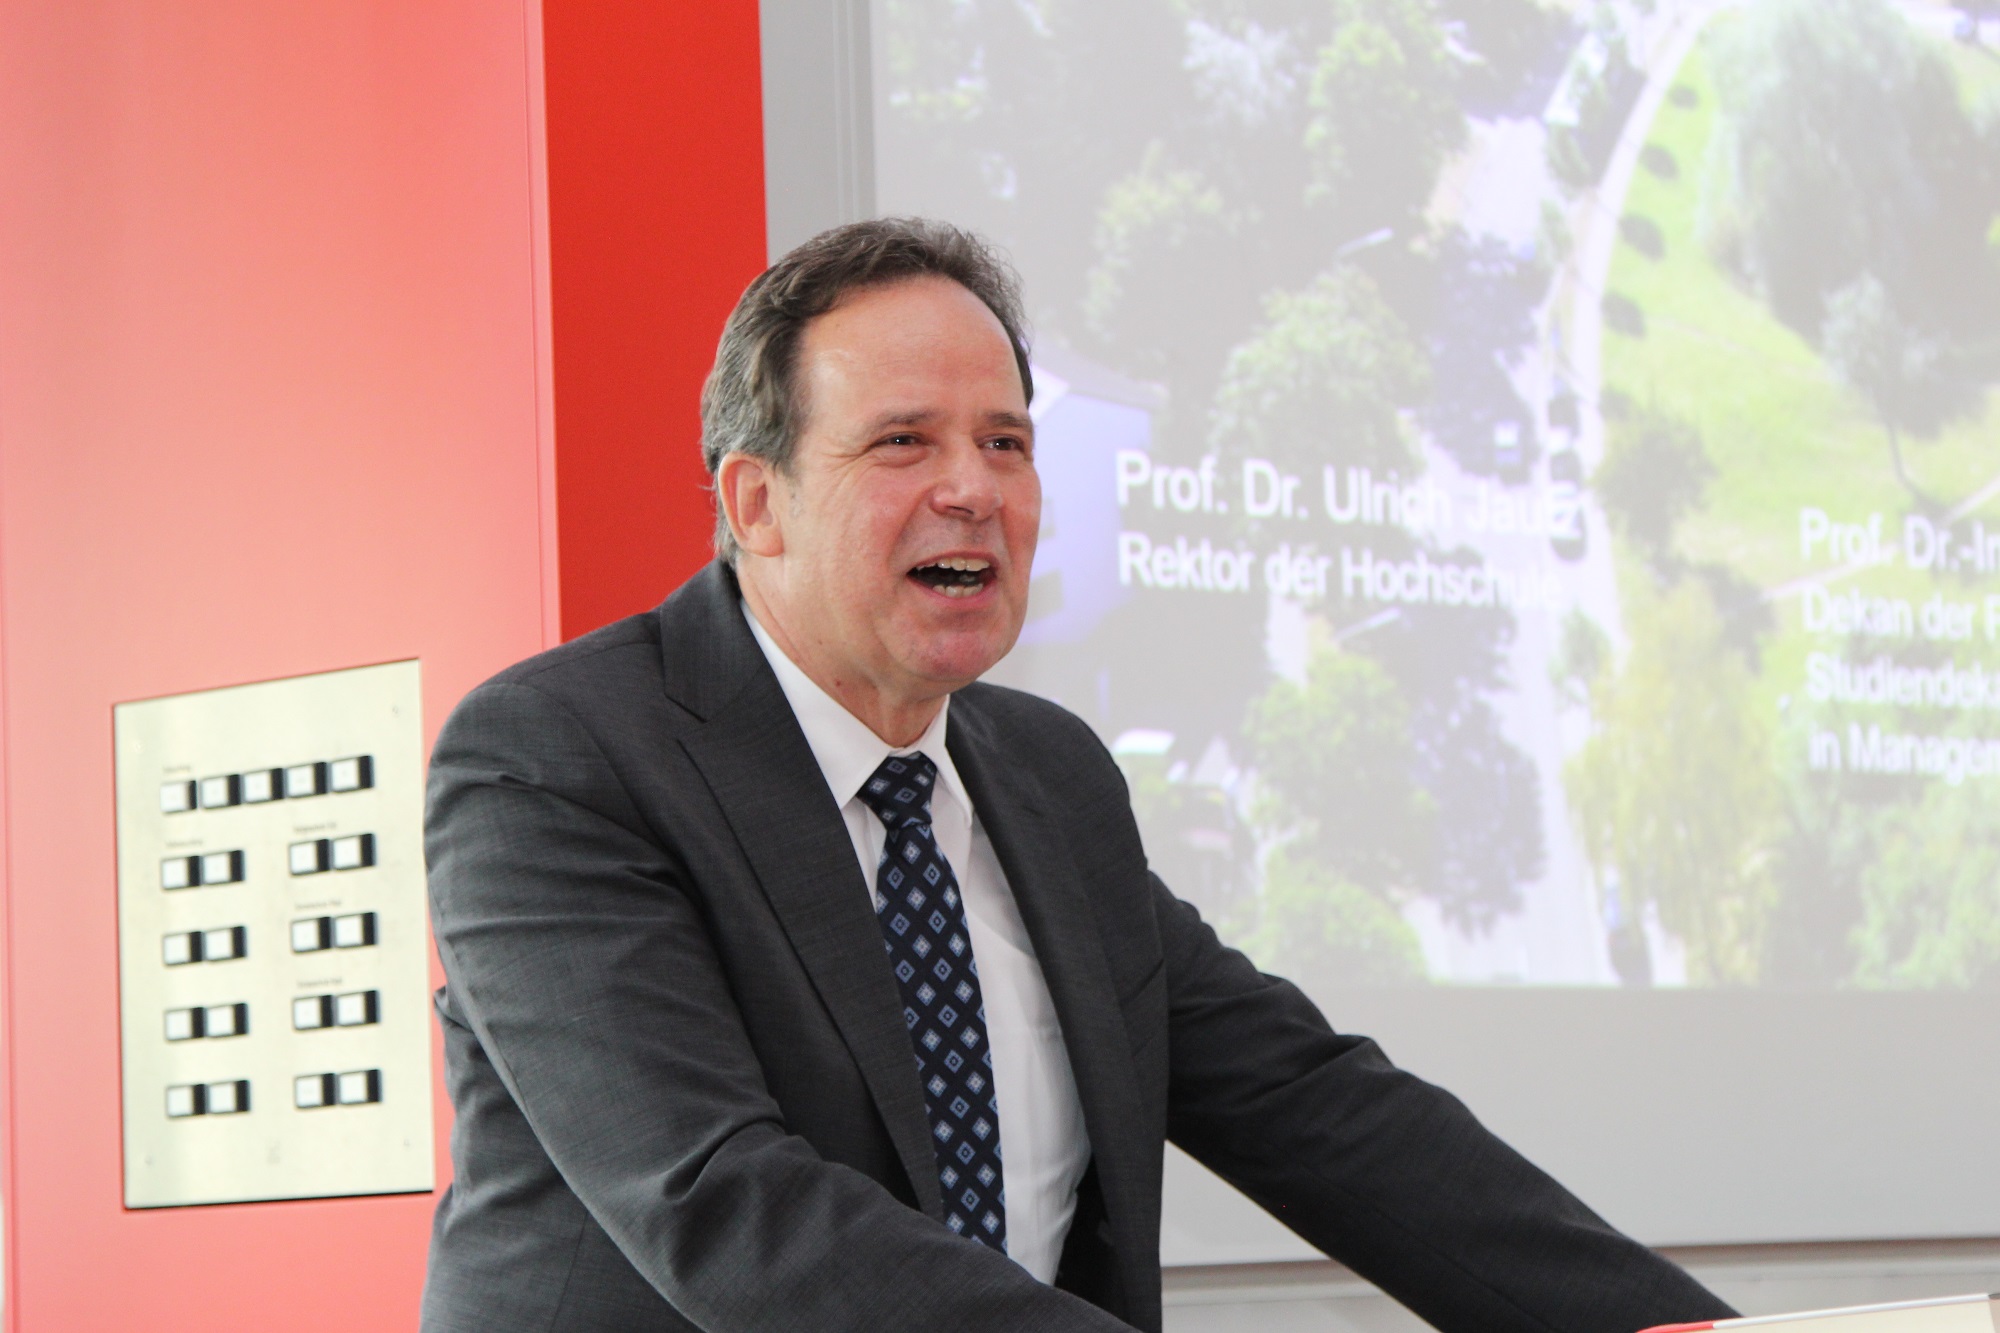 Rektor der Hochschule Pforzheim, Prof. Dr. Ulrich Jautz